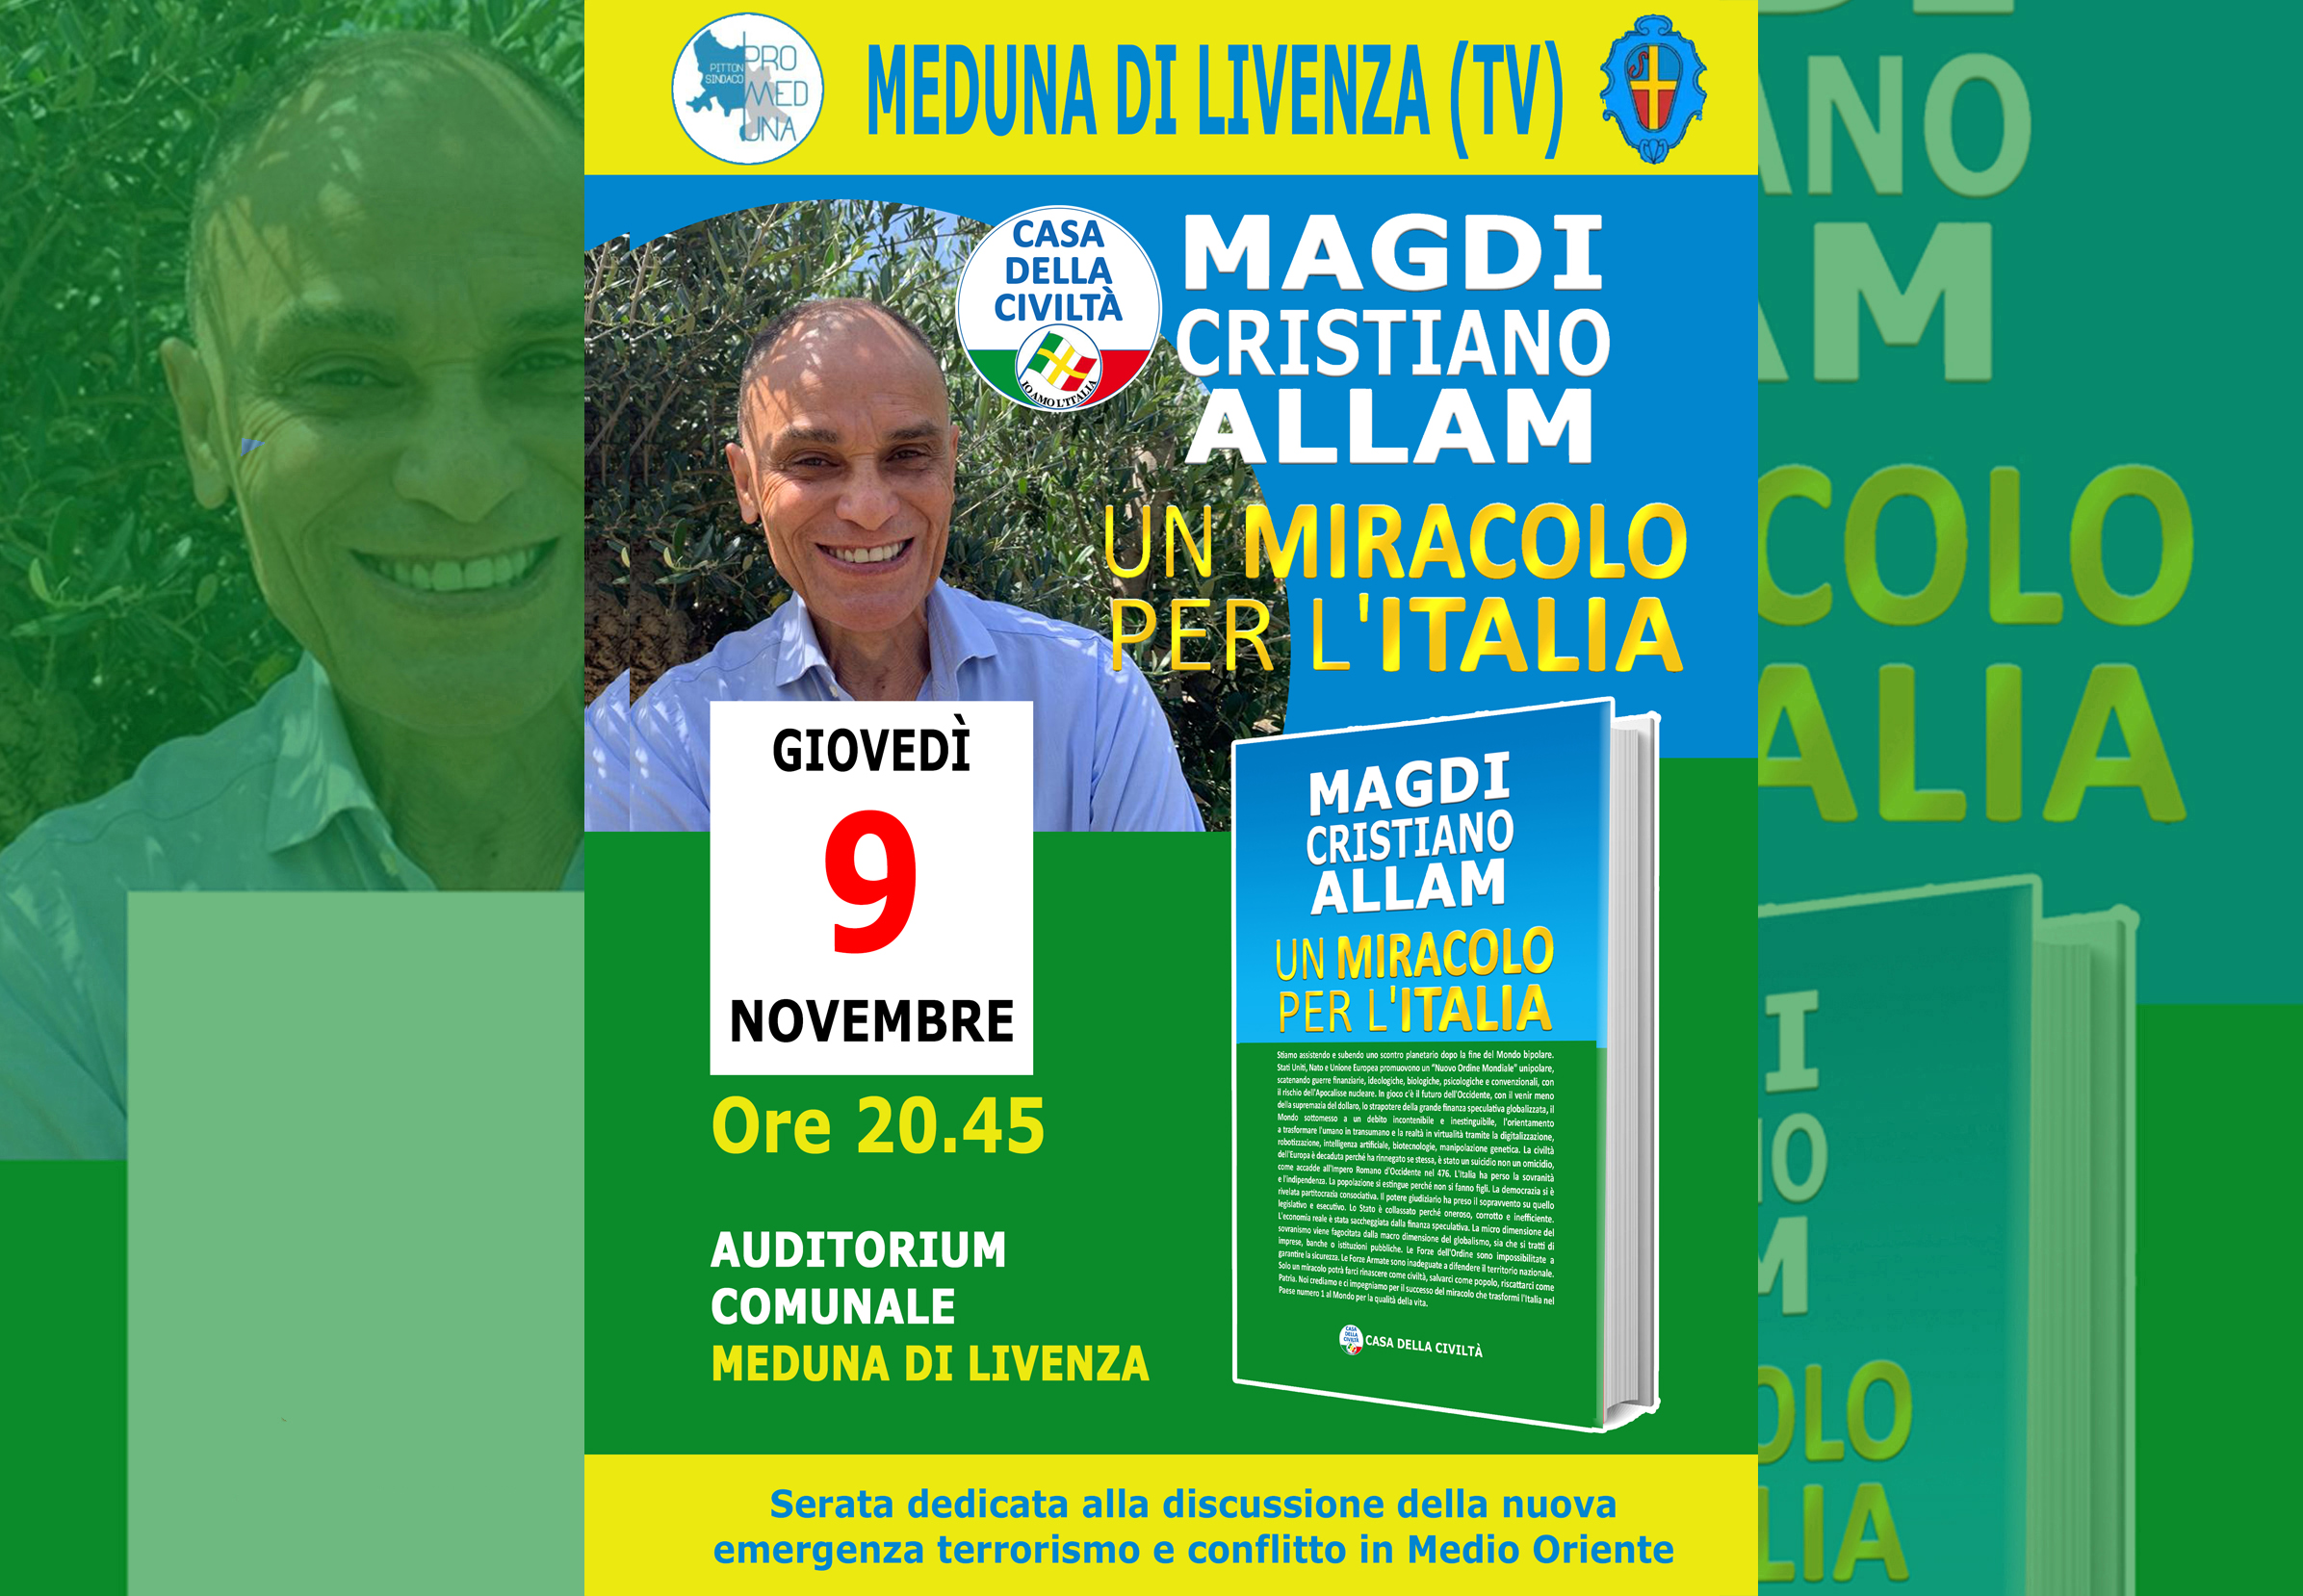 MAGDI CRISTIANO ALLAM a Meduna di Livenza  (TV). Giovedì 9 novembre, alle ore 20.45 – Auditorium Comunale